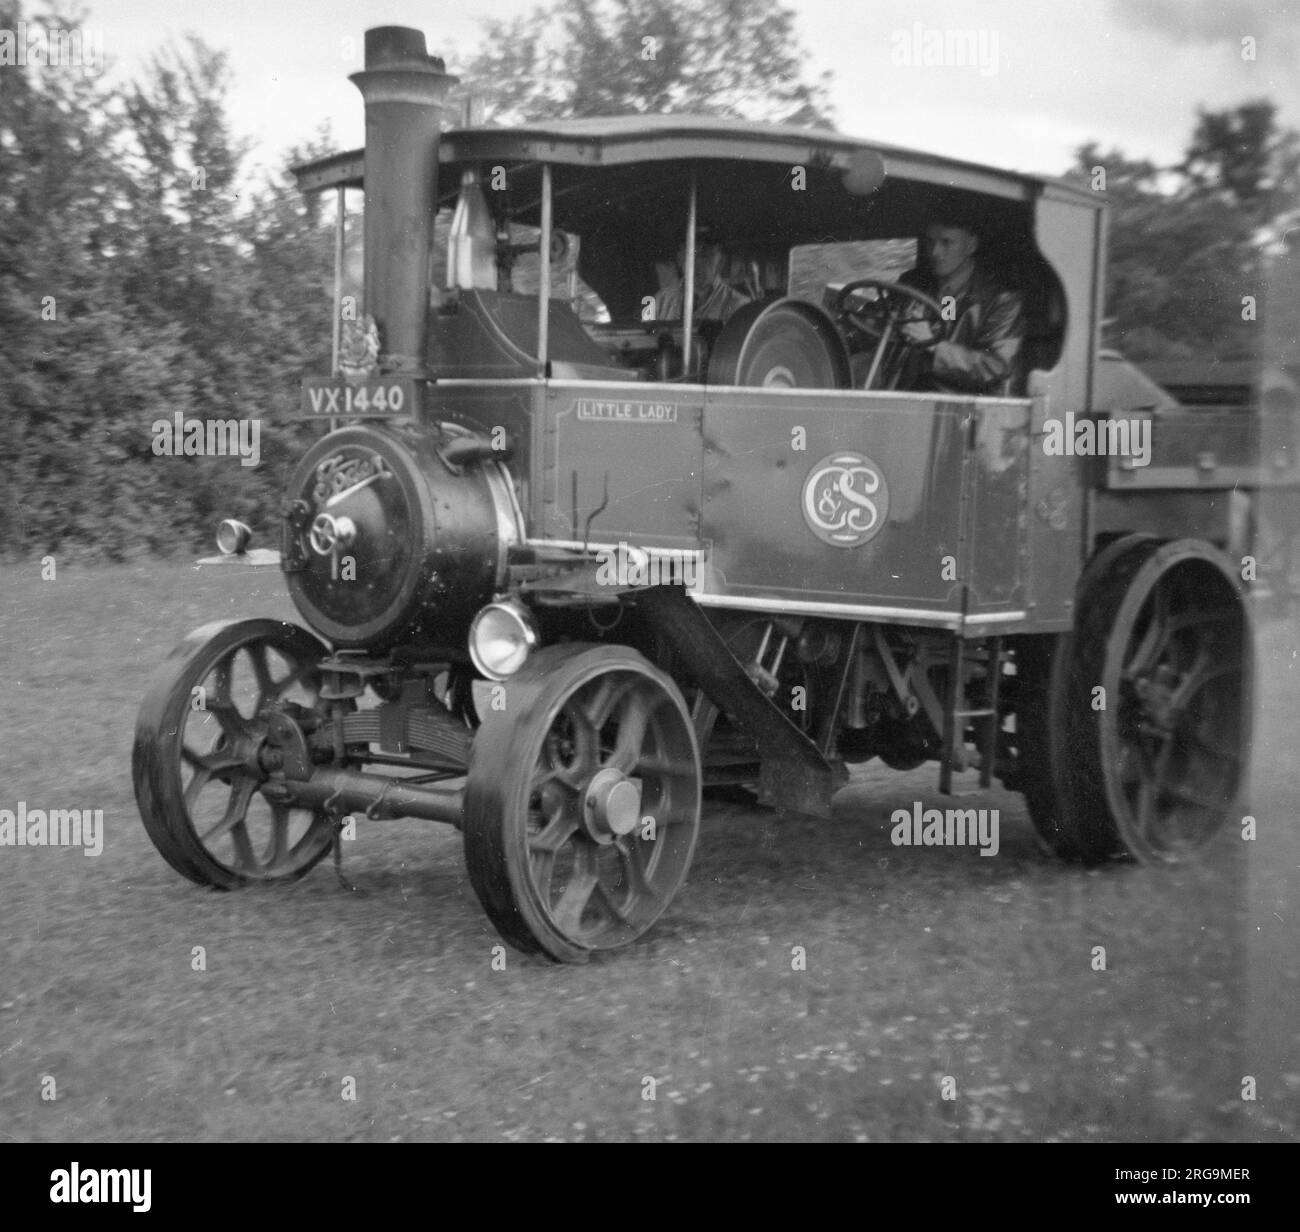 Foden D-Typ Dampfwagen Little Lady reg. VX1440 (msn 13444), erbaut 1929, in Walford Cross, nahe Taunton. (FODEN Trucks war ein britisches Lkw- und Busunternehmen, das 1856 in Elworth bei Sandbach seinen Ursprung hatte.) Stockfoto